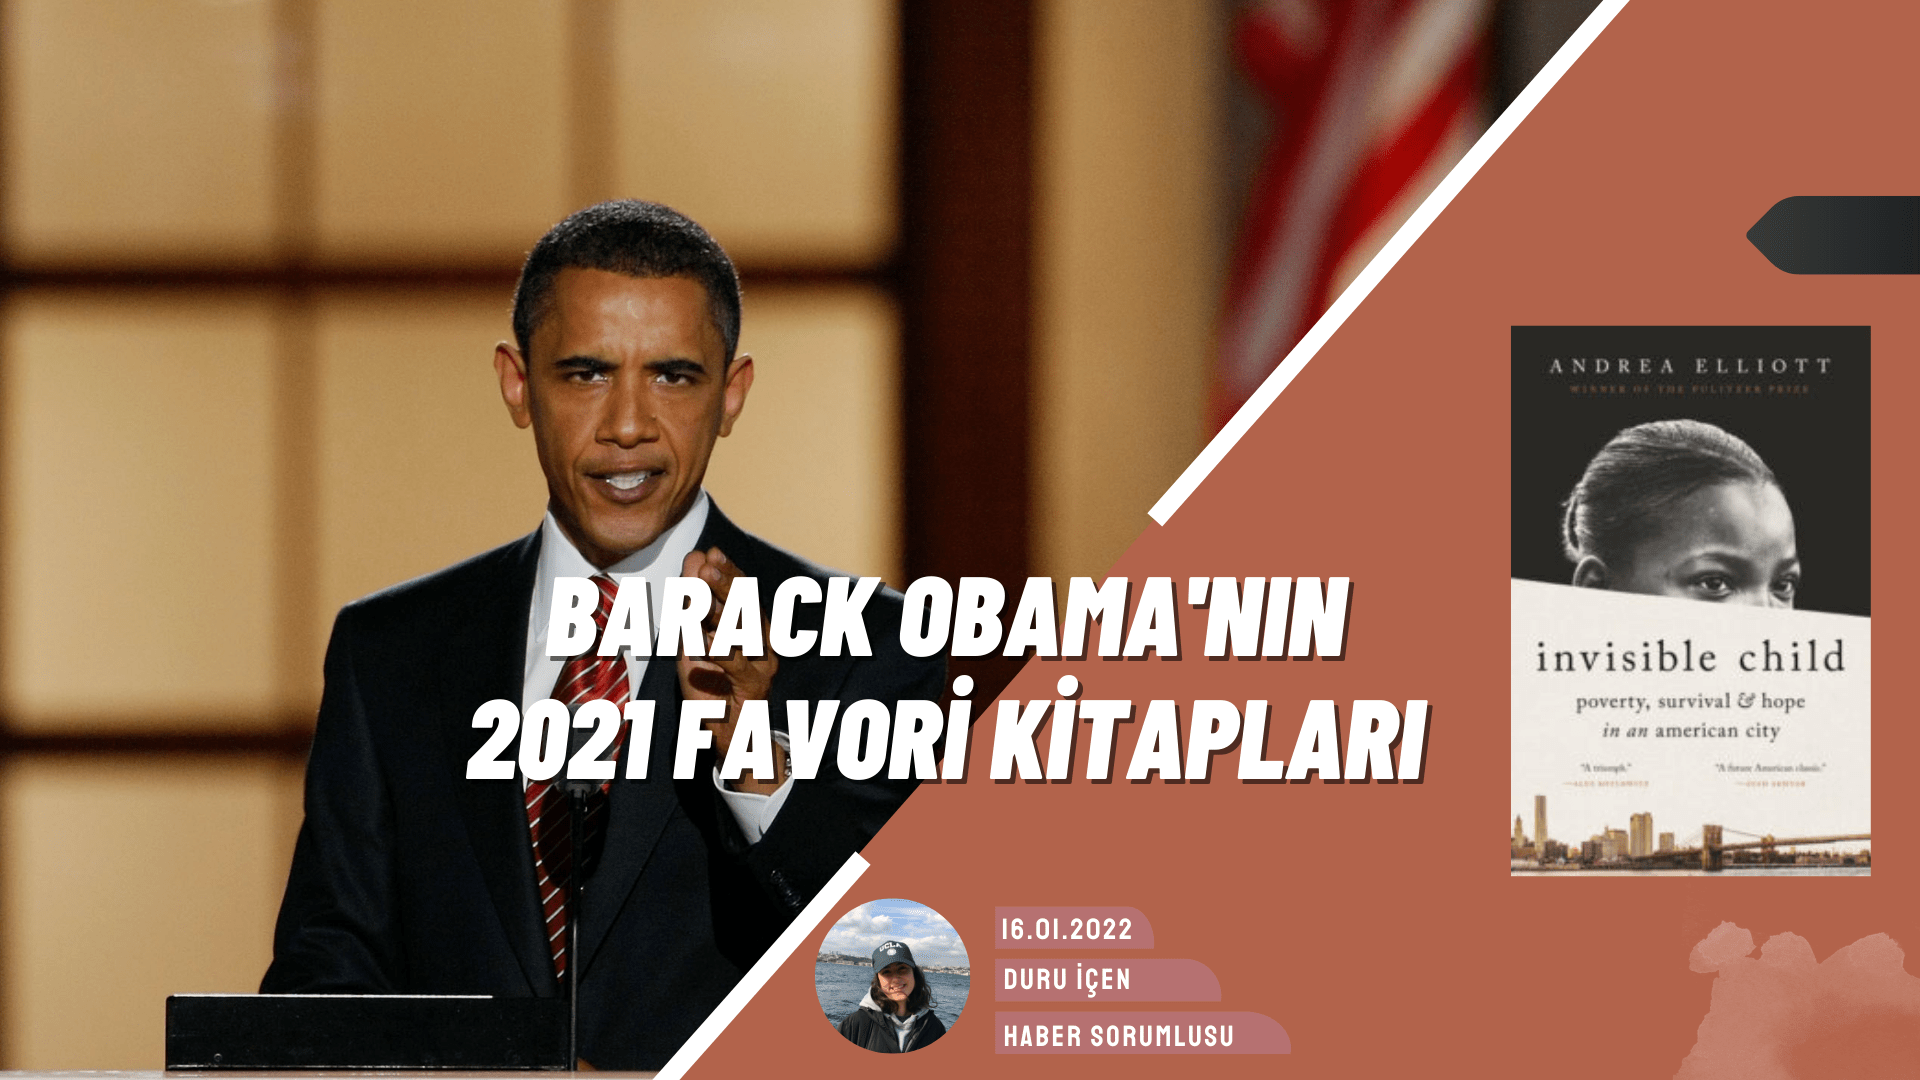 Barack Obama 2021 Yılındaki Favori Kitaplarını Paylaştı!